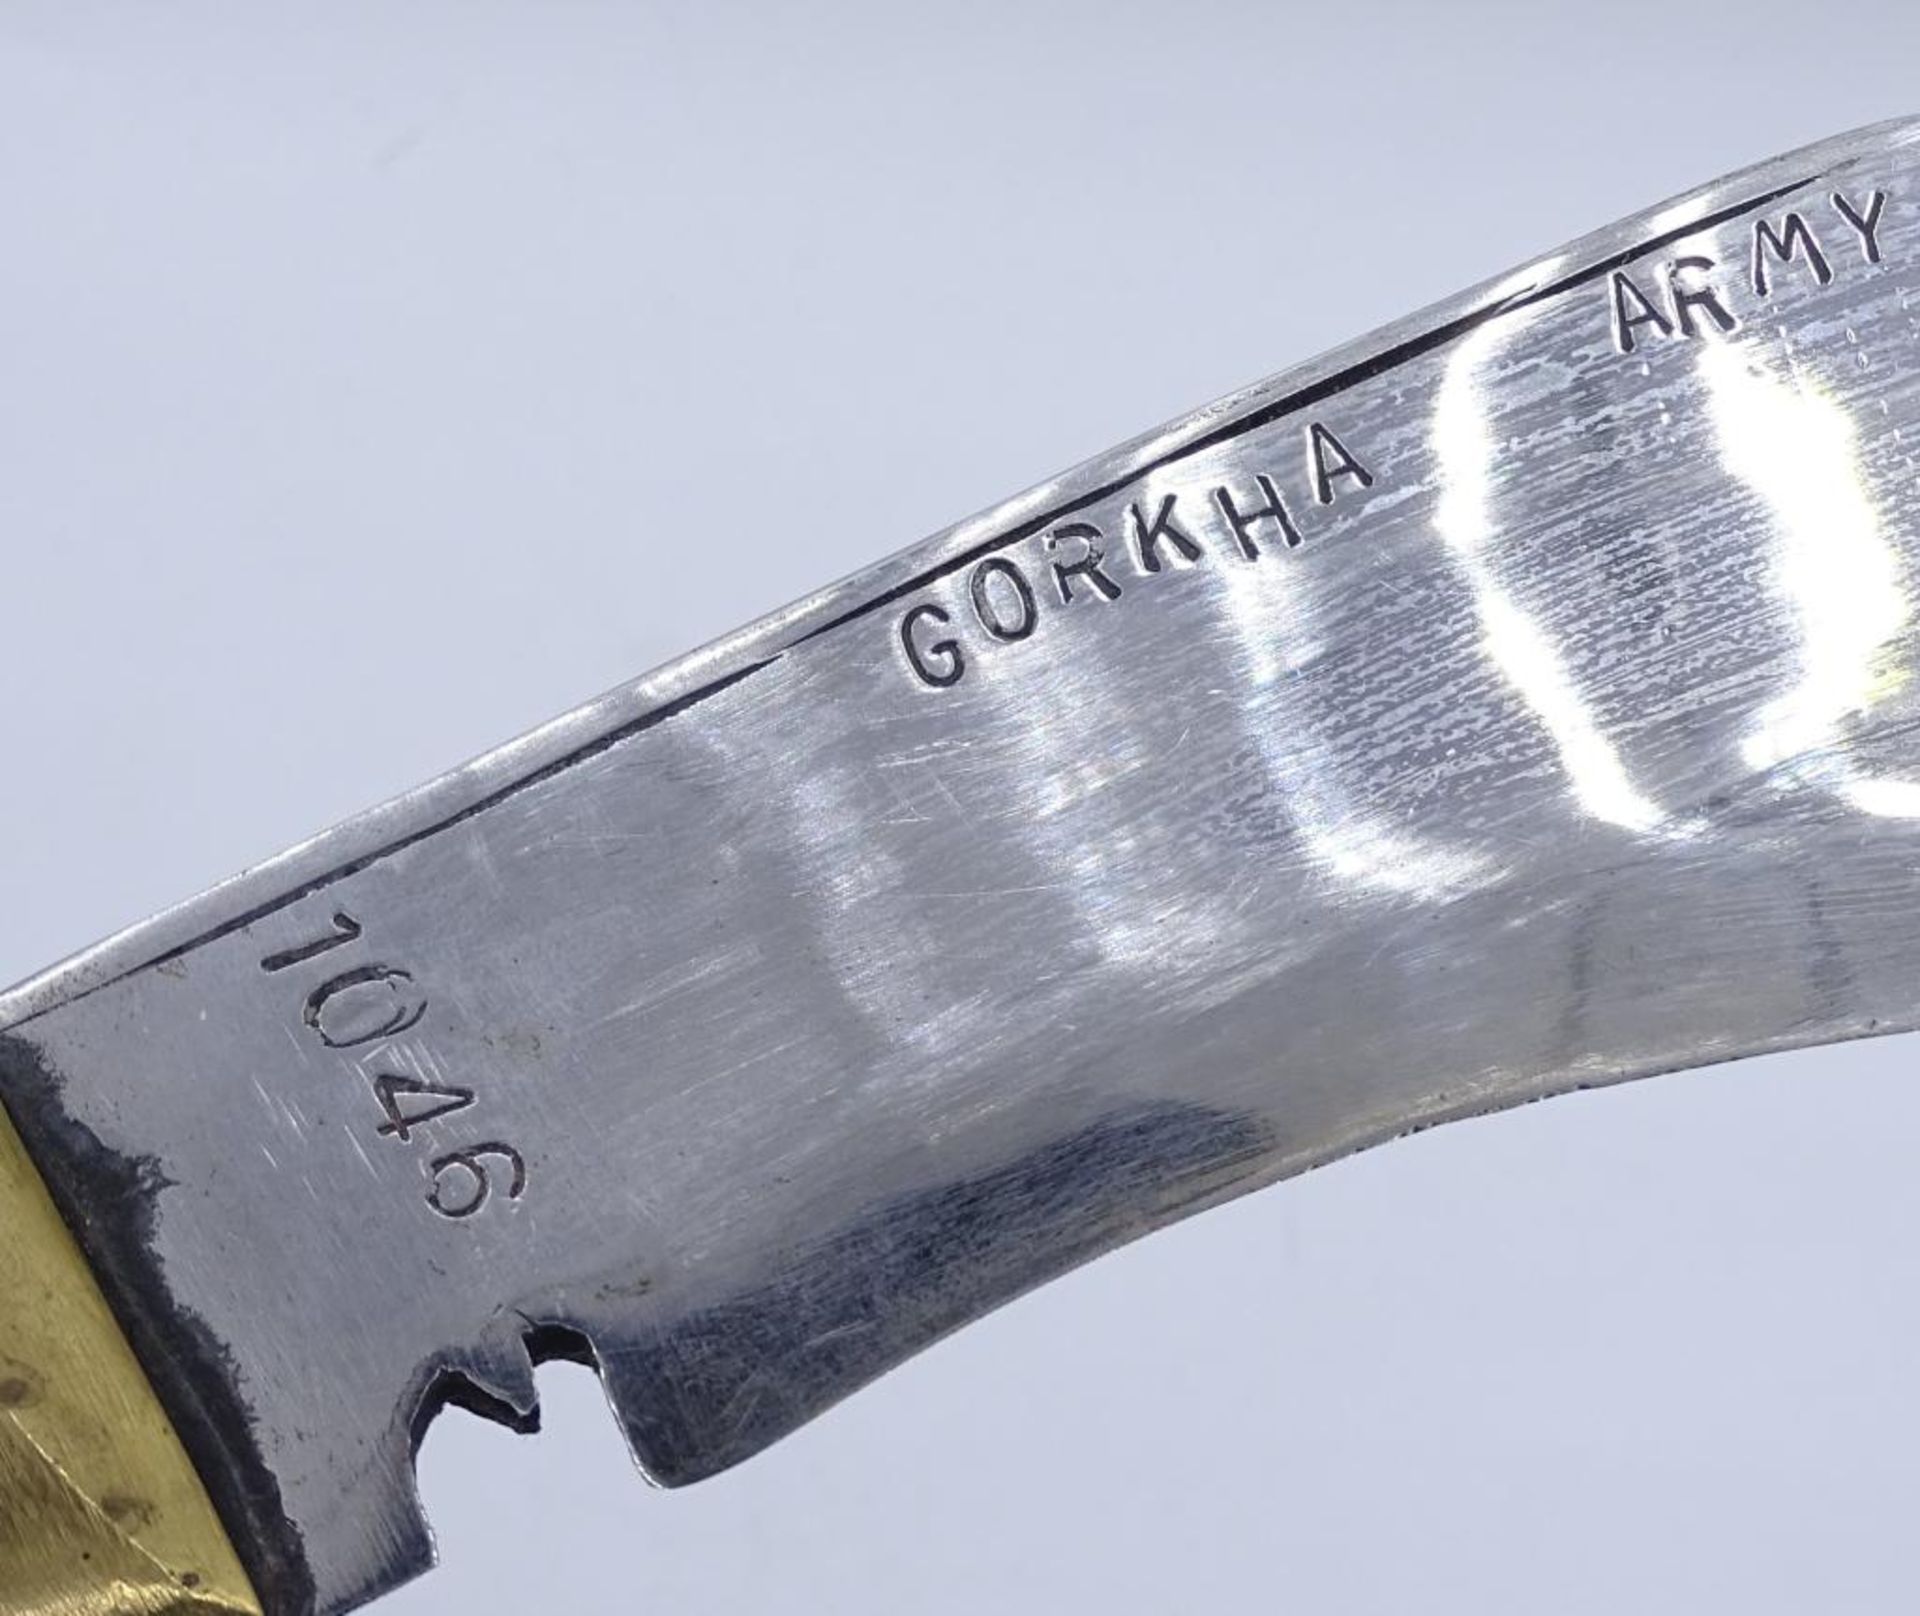 Gurkha Kukri Messer in Scheide,L- 33,5cm- - -22.61 % buyer's premium on the hammer priceVAT margin - Bild 3 aus 4